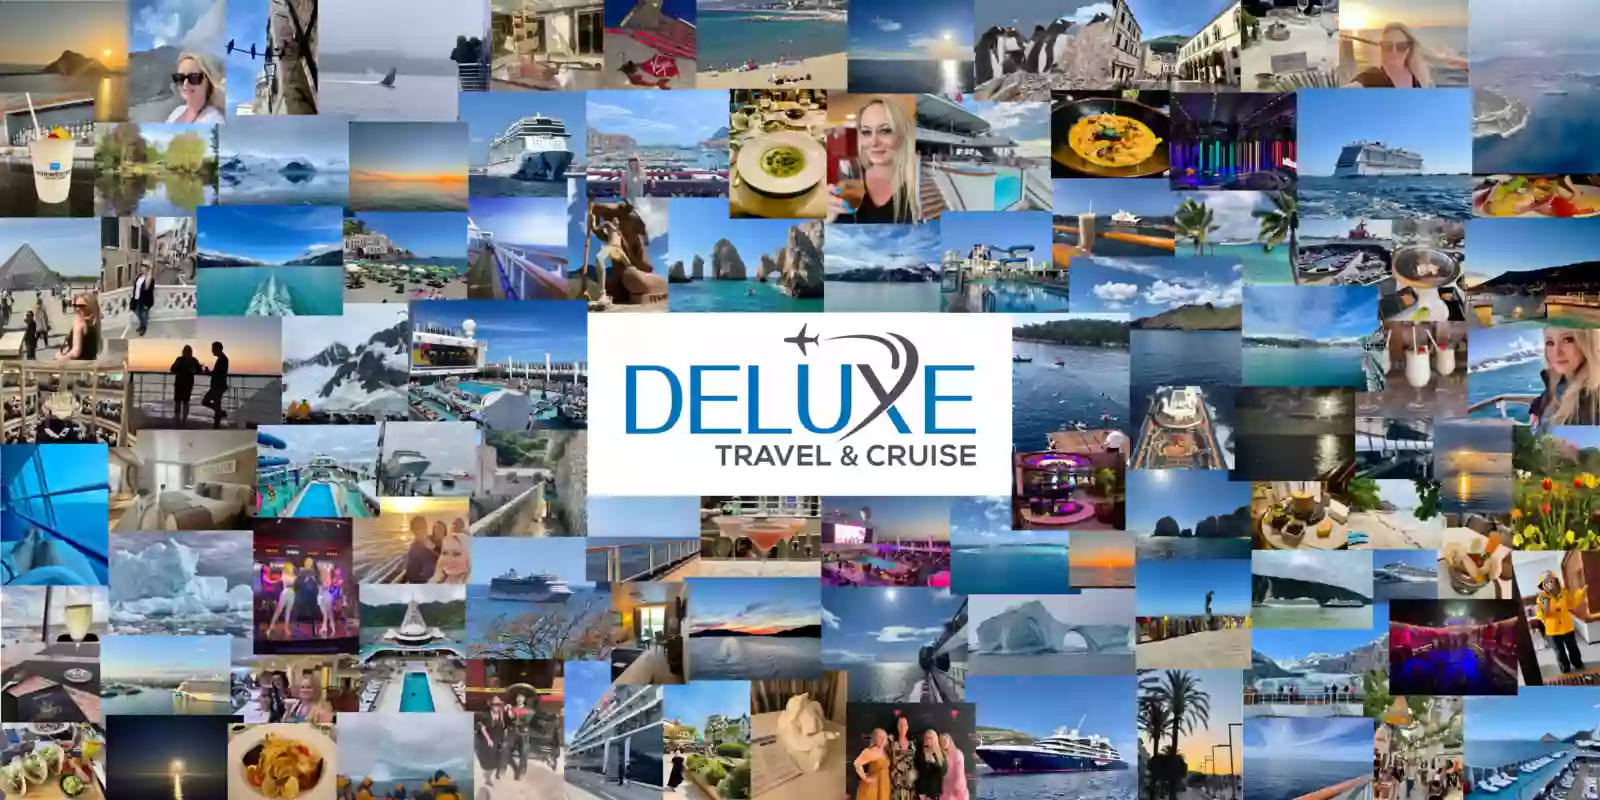 Deluxe Travel & Cruise